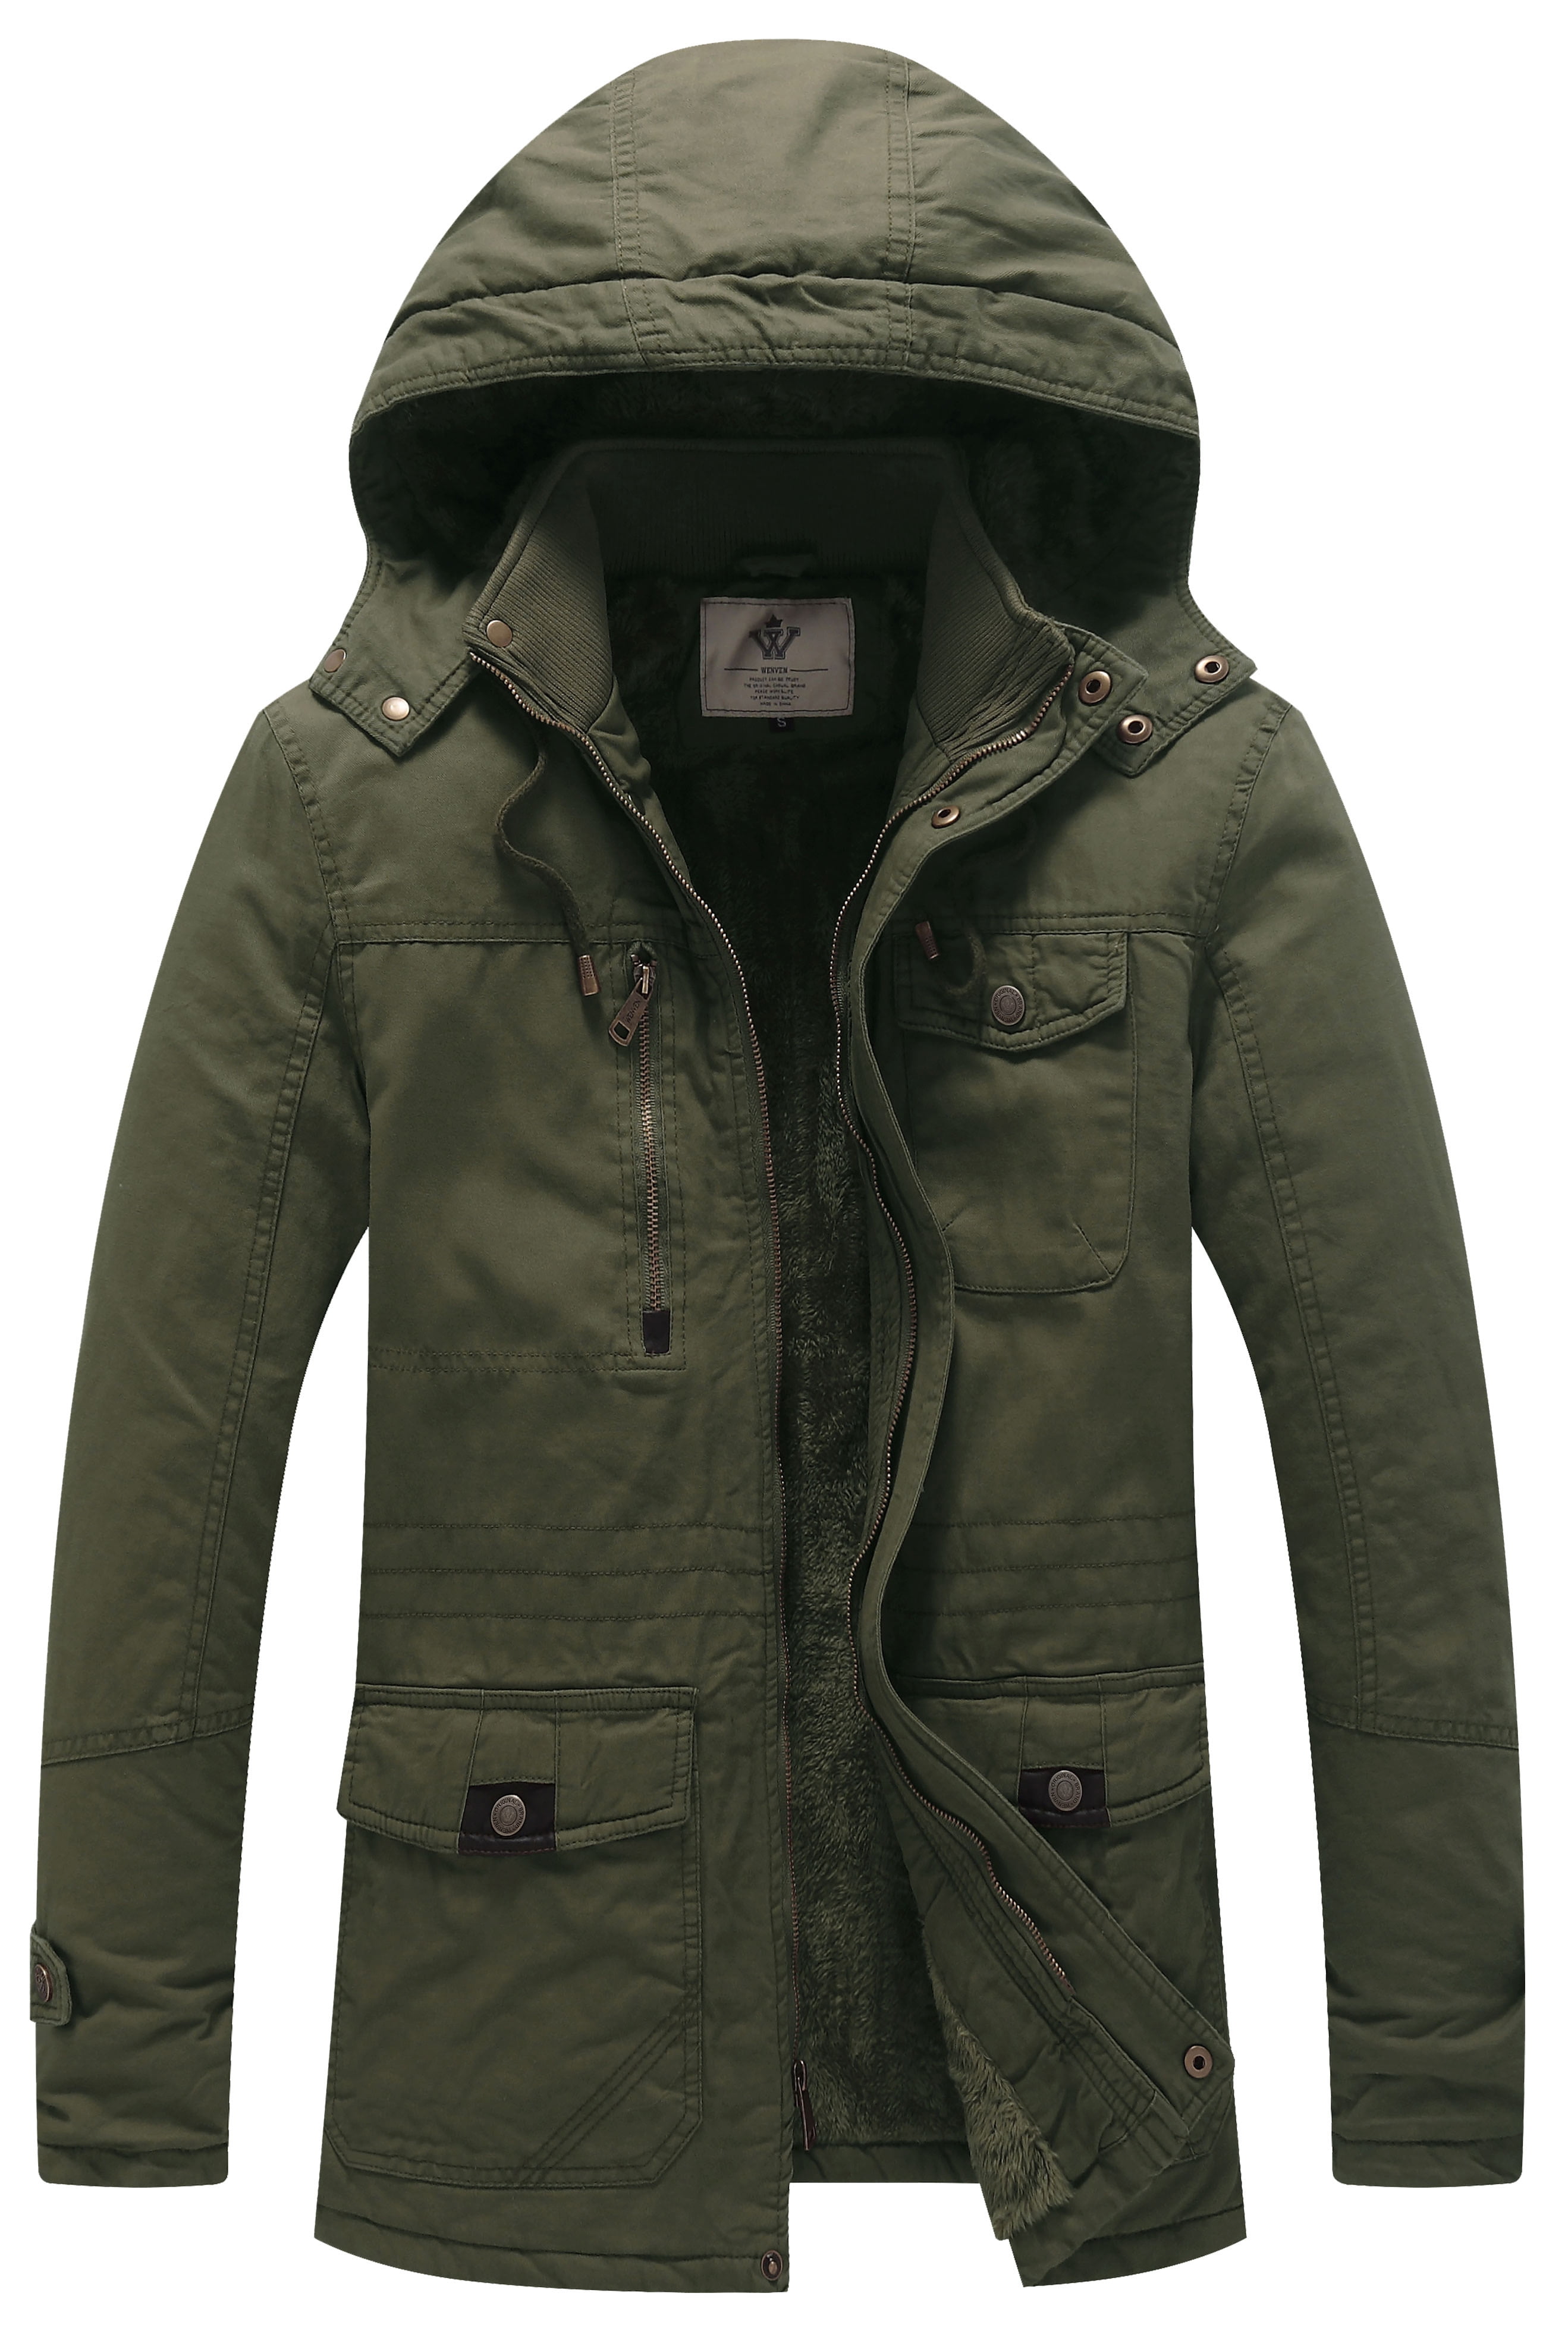 Schaap steenkool Lao WenVen Men's Winter Warm Thickened Cotton Parka Jacket Coat Green XL -  Walmart.com